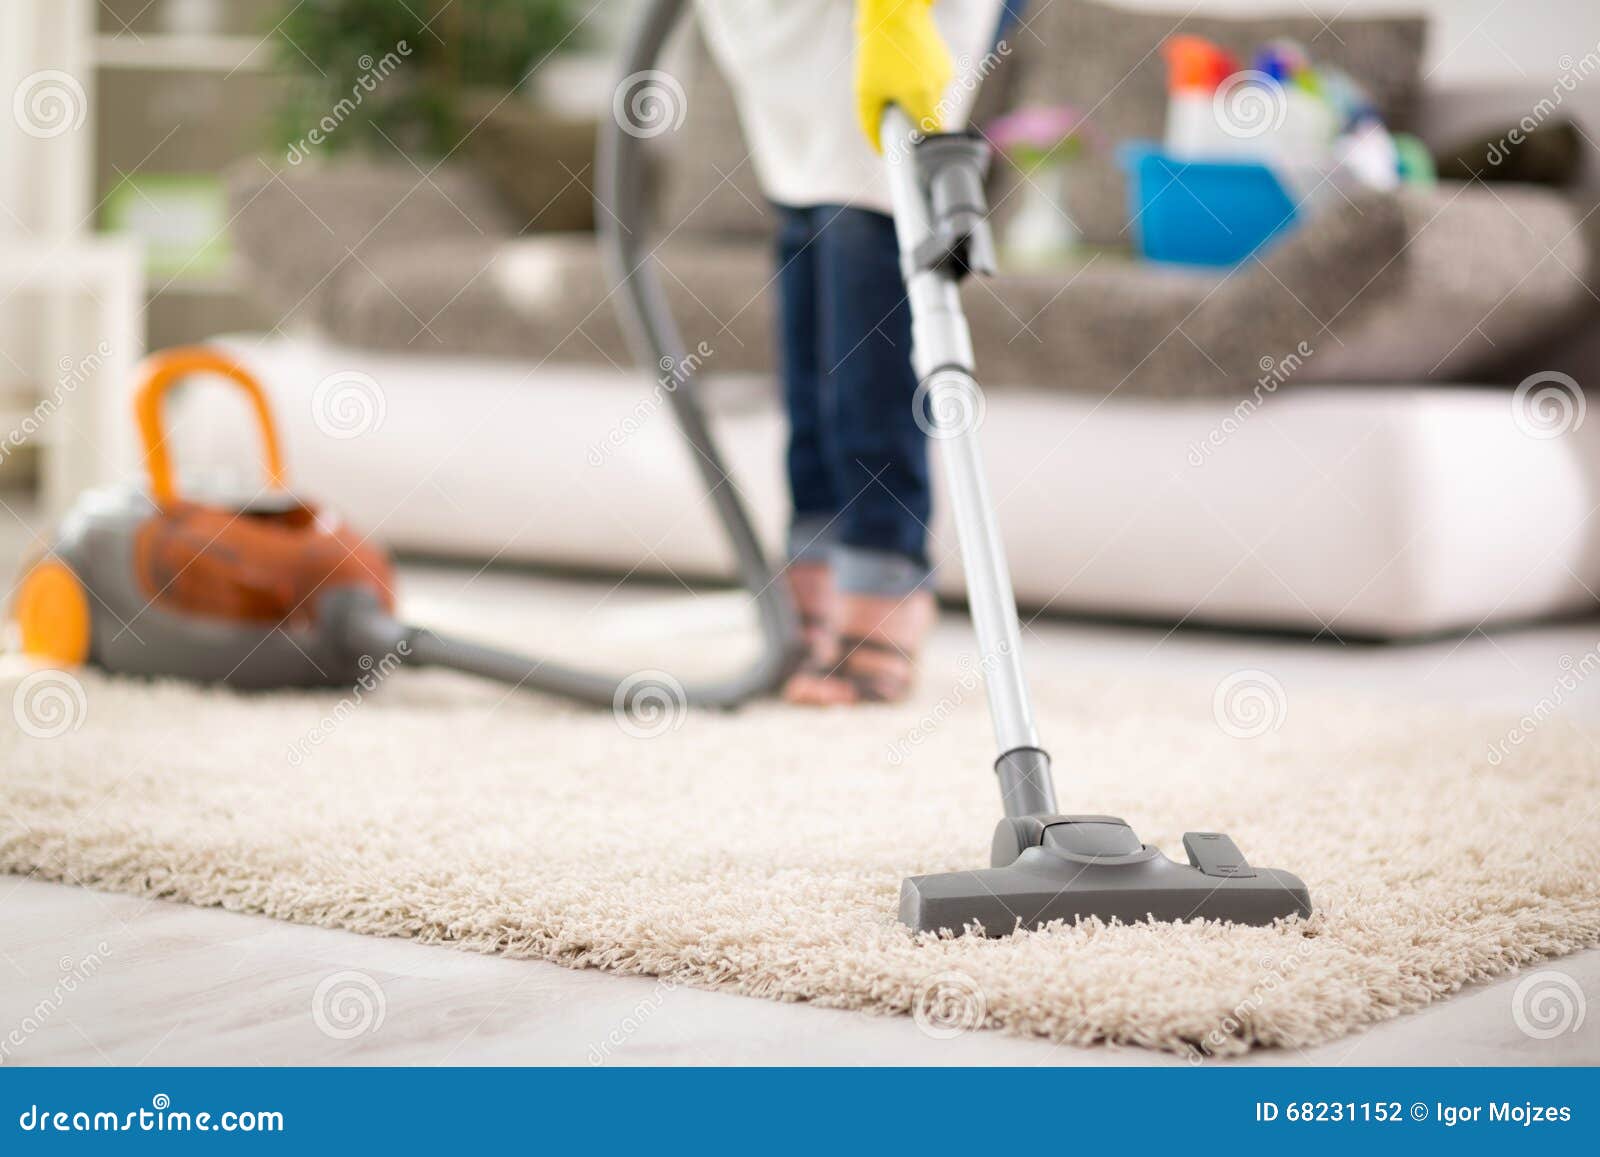 vacuuming carpet